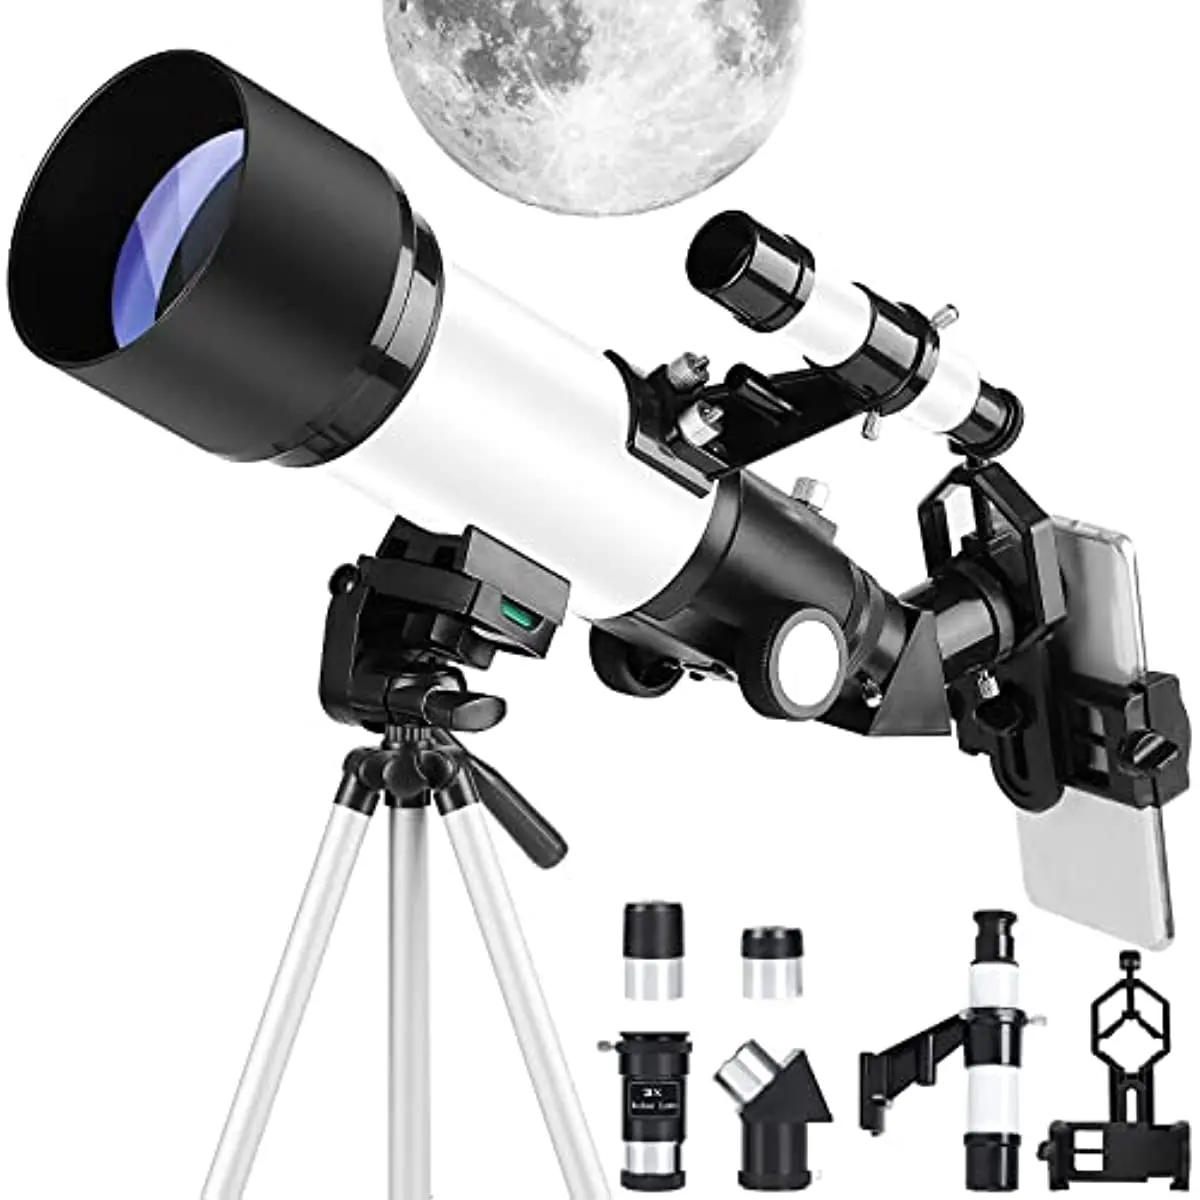 

Телескопы для взрослых детей начинающих-70 мм Диафрагма 400 мм телескоп FMC Оптический для просмотра Луны планеты-портативный рефрактор T